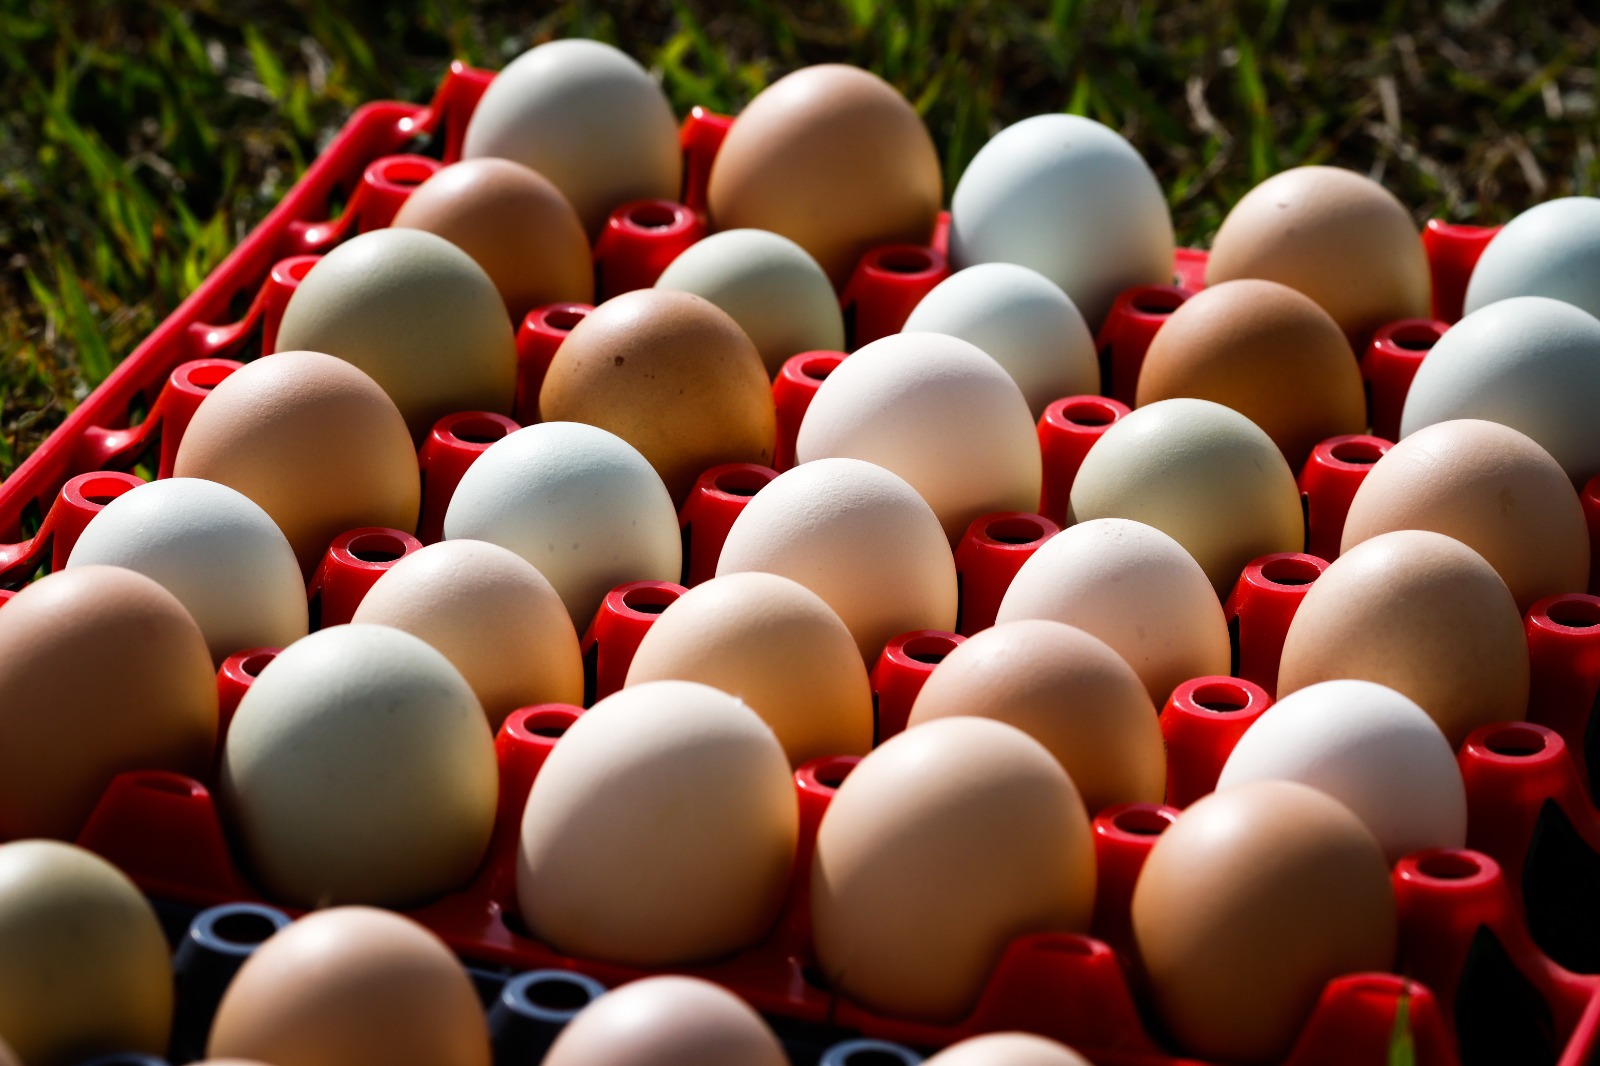 Produção de ovos deve crescer 14,6% em Goiás neste ano, segundo Ministério da Agricultura e Pecuária